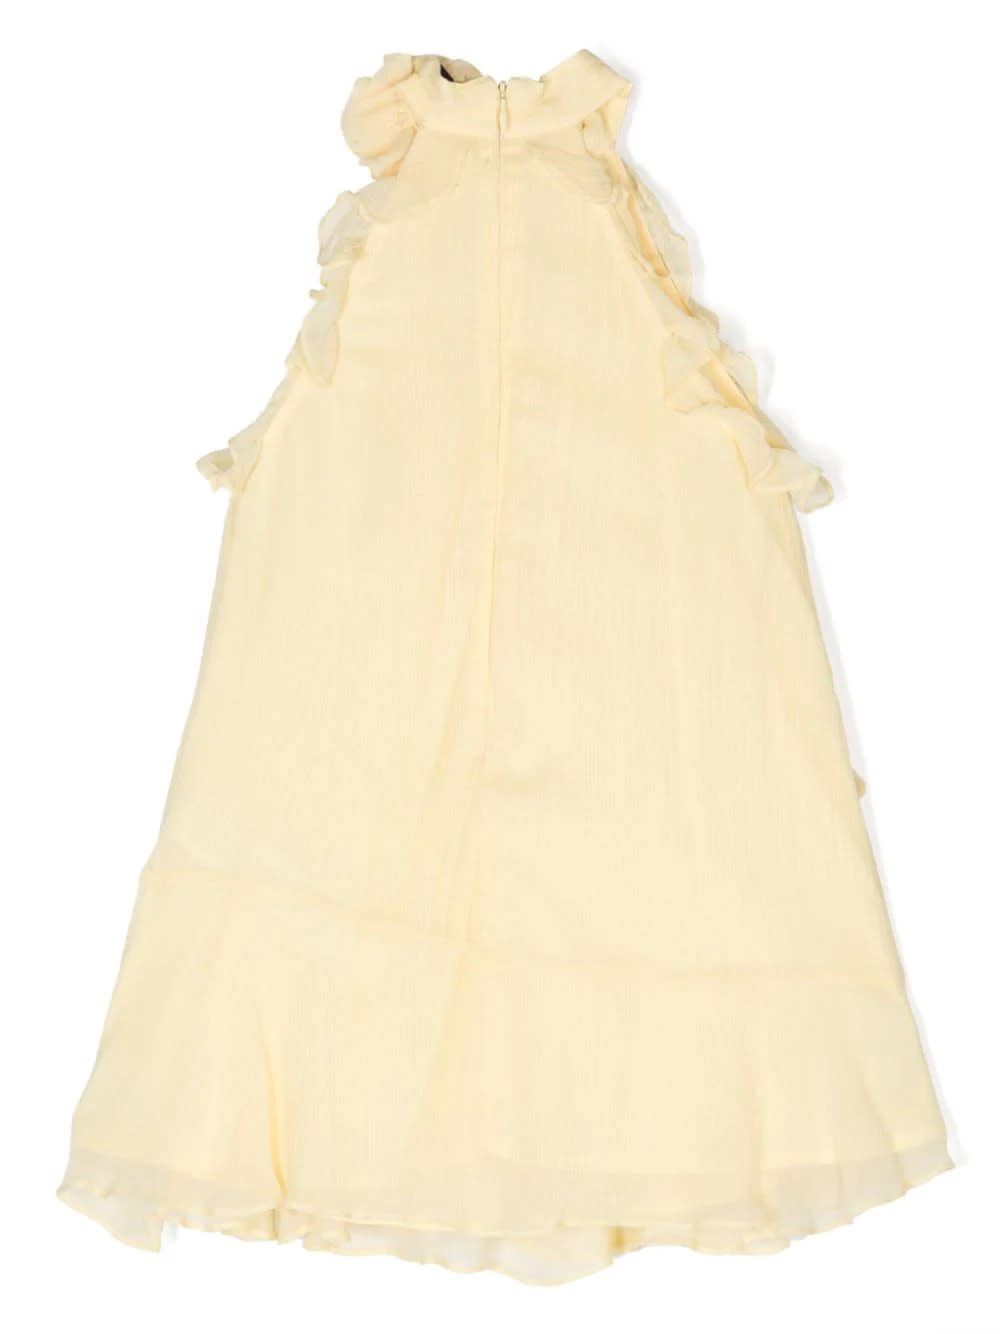 Shop Miss Blumarine Pastel Yellow Ruffled Chiffon Dress